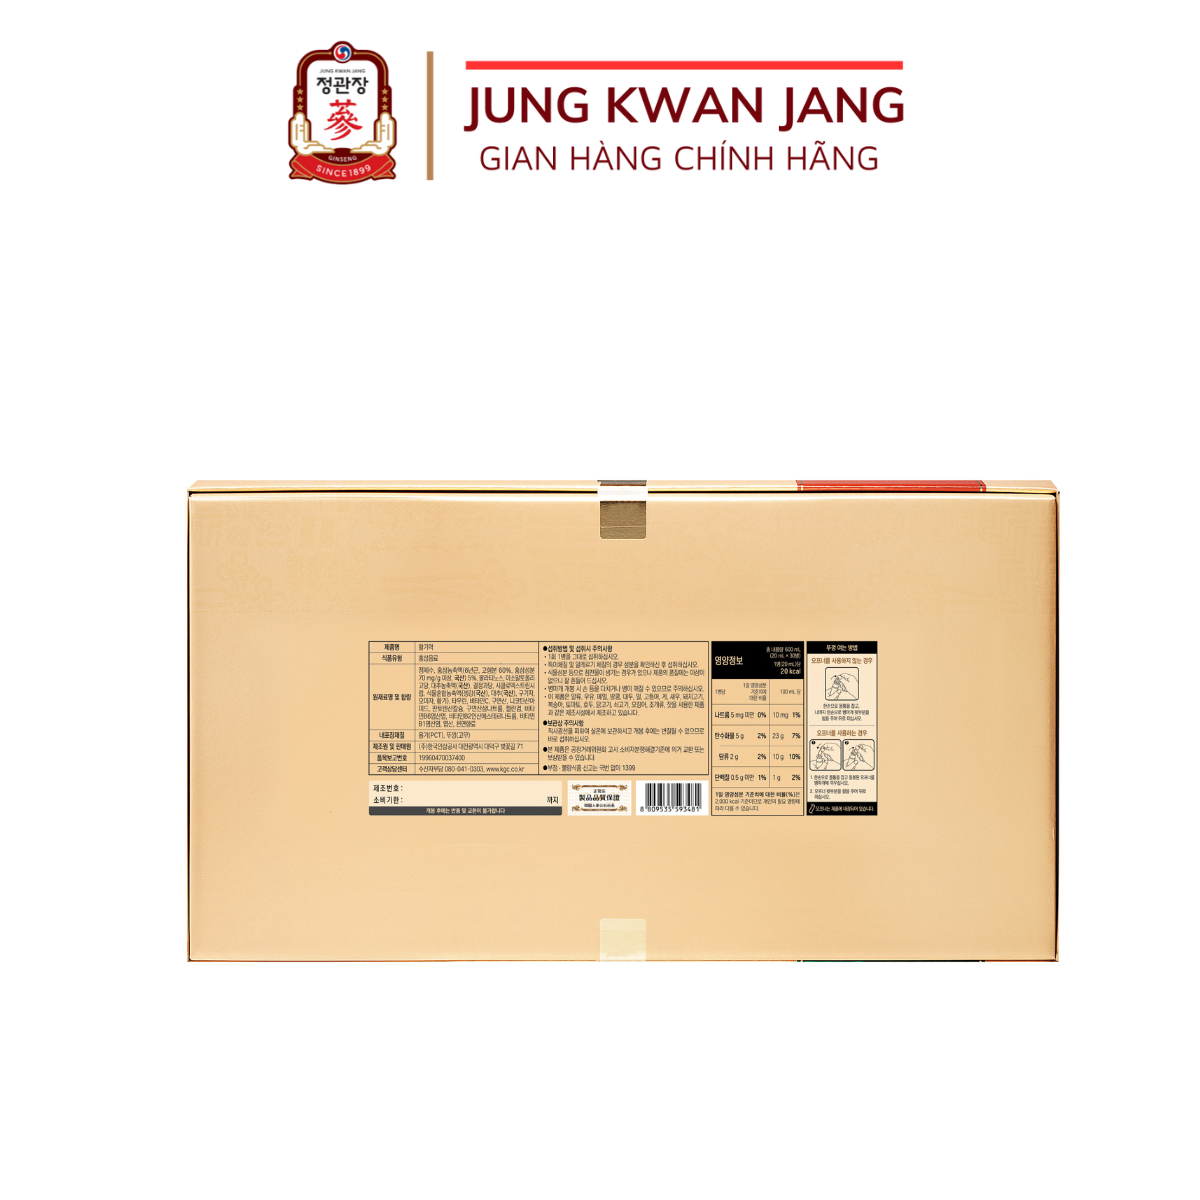 Nước Hồng Sâm Hàn Quốc Cao Cấp KGC Jung Kwan Jang Vital Tonic Hwal Gi Ruk (20ml x 30 Ống)